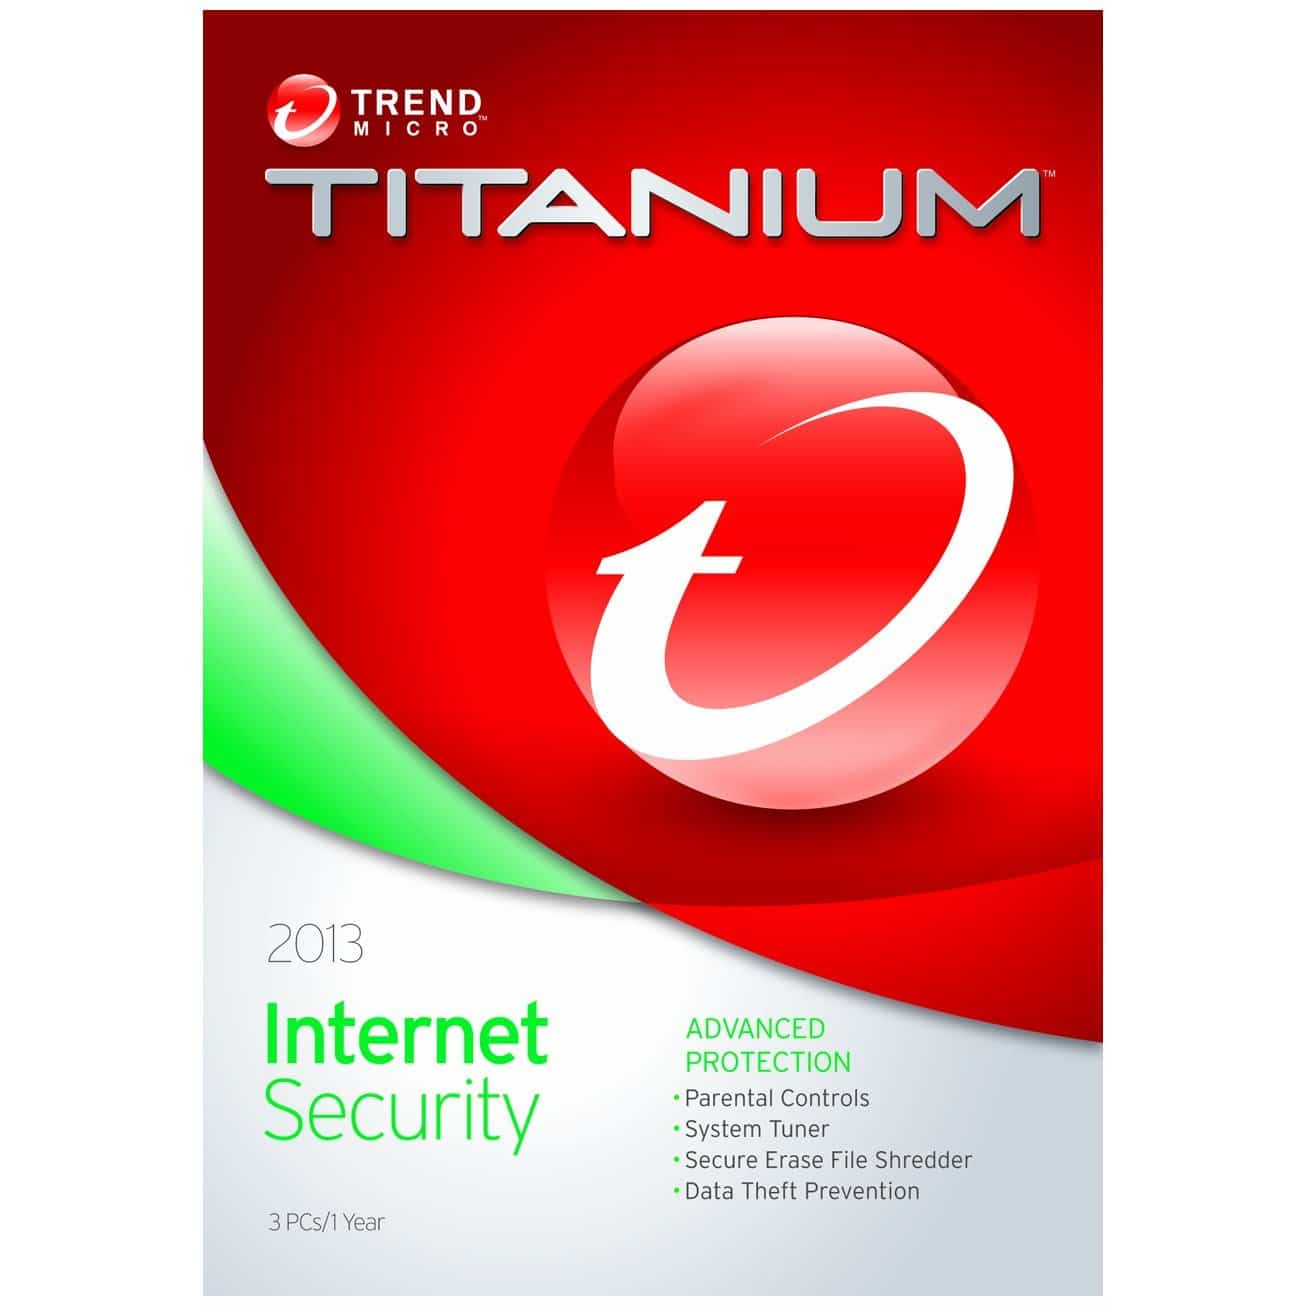 برنامج  Trend Micro Titanium Internet Security 2014 الحماية الأقوى فى إزالة الفيروسات وتنظيف الجهاز